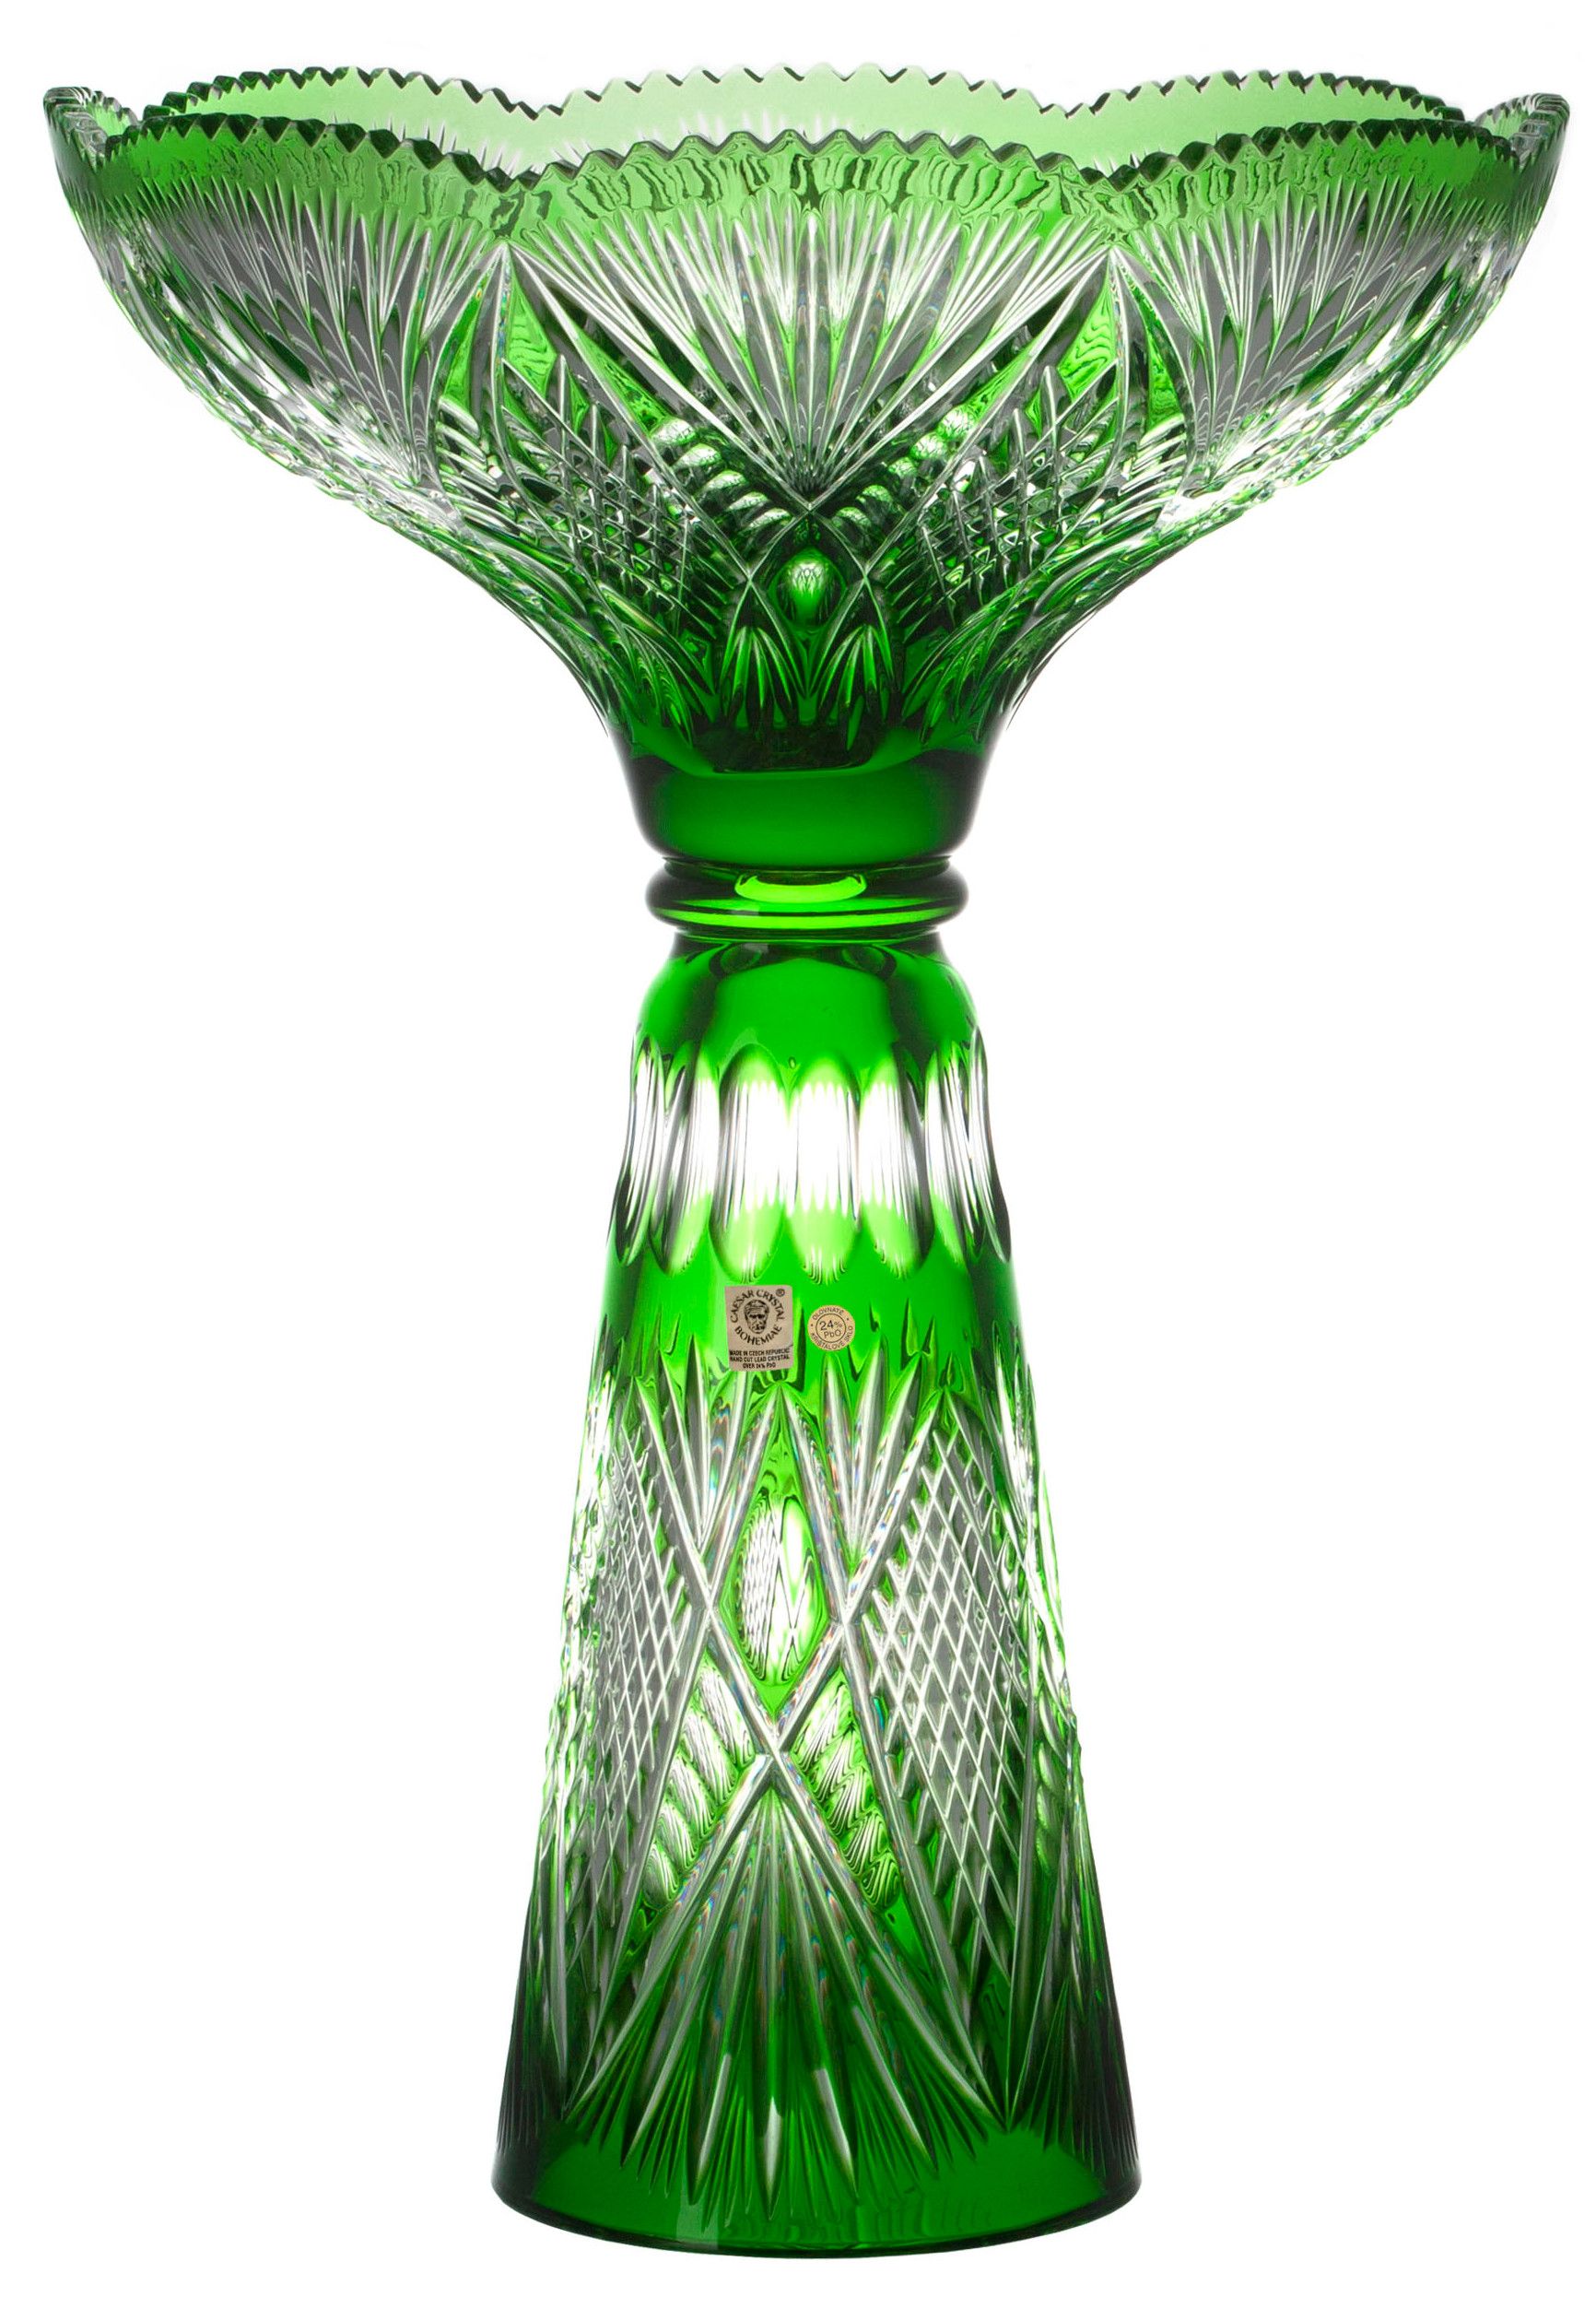 Krištáľová váza Gabriela, farba zelená, výška 465 mm